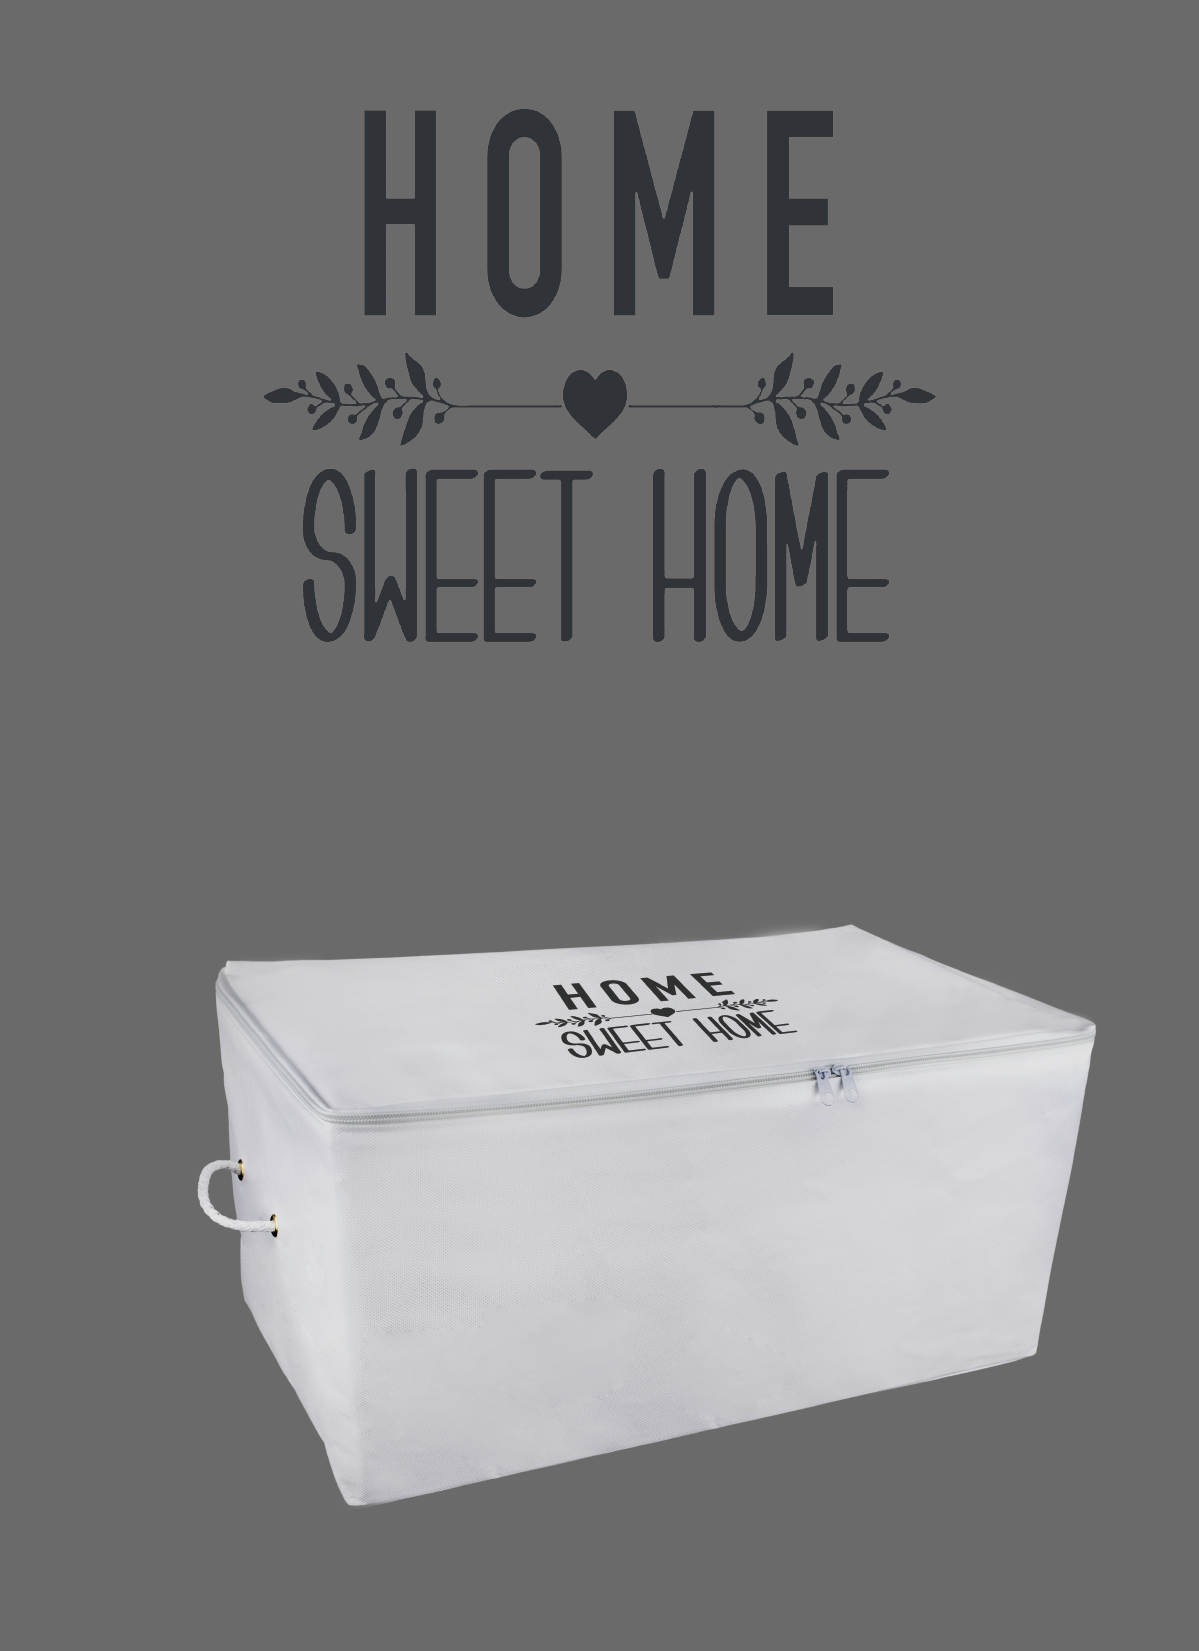 ROPE HOME Büyük Boy Home Sweet Home Siyah Baskılı Hurç 64x40x35 34.5-01  Beyaz | Sefamerve